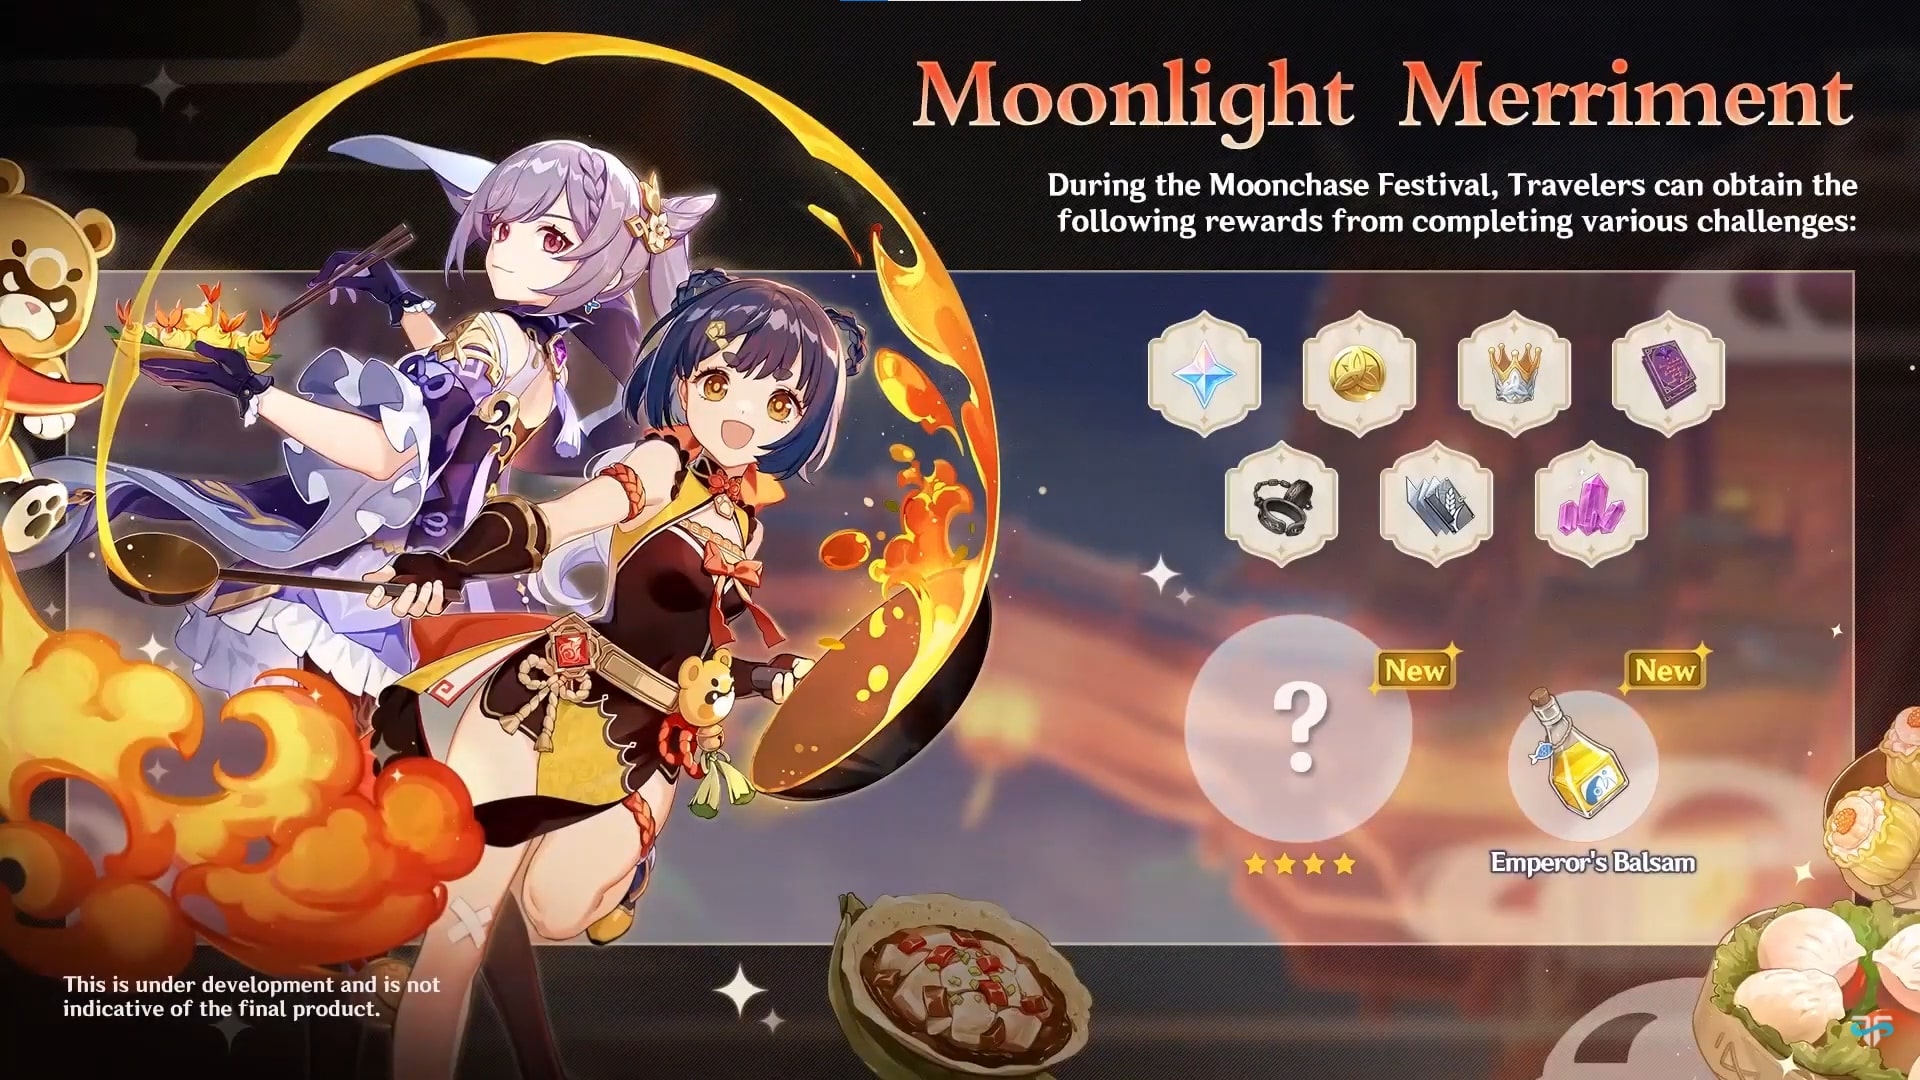 Genshin Impact Moonlight Merriment